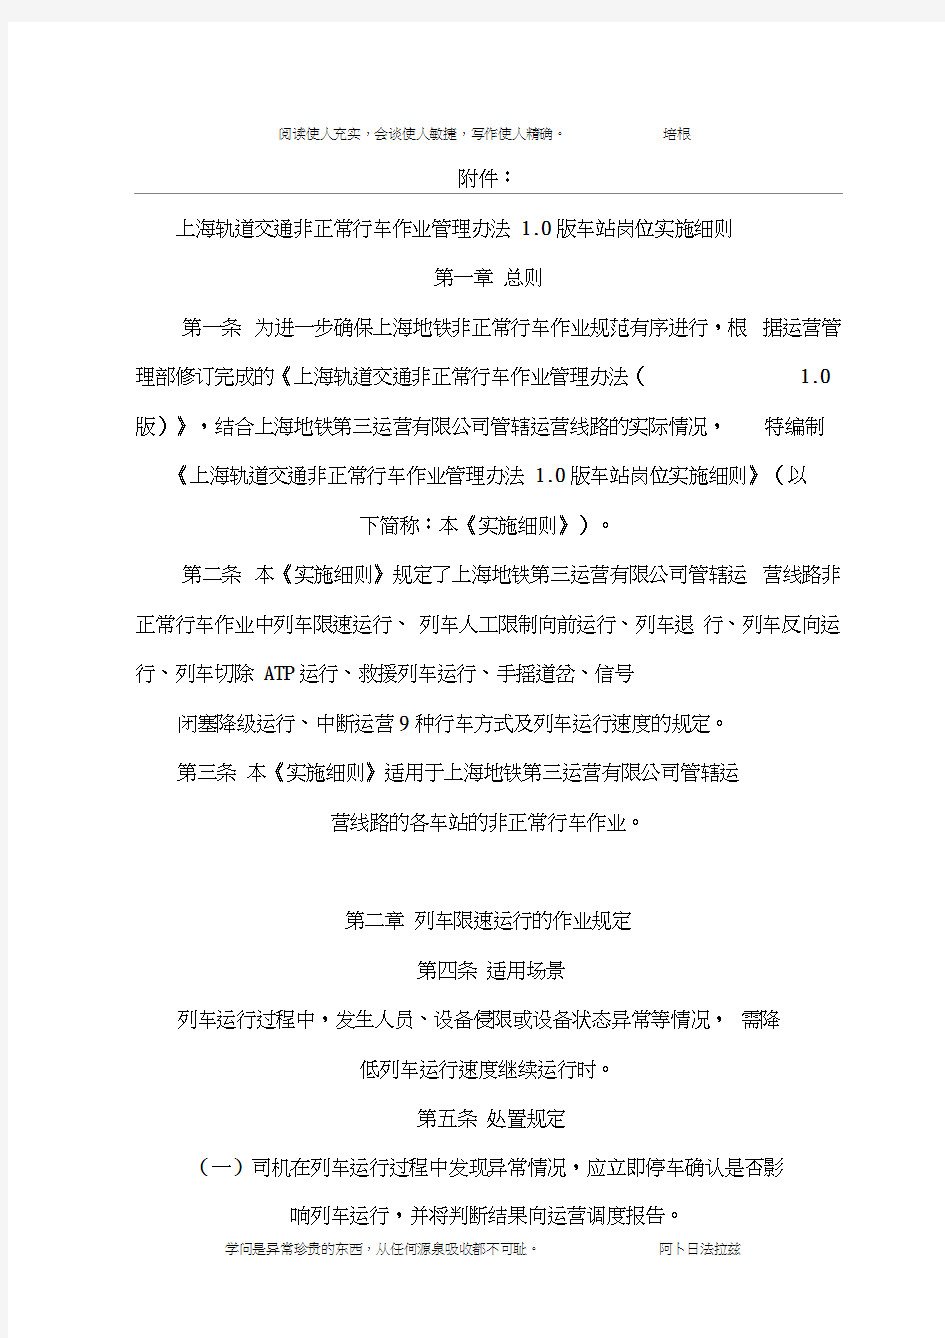 上海轨道交通非正常行车作业管理办法1.0版车站岗位实施细则